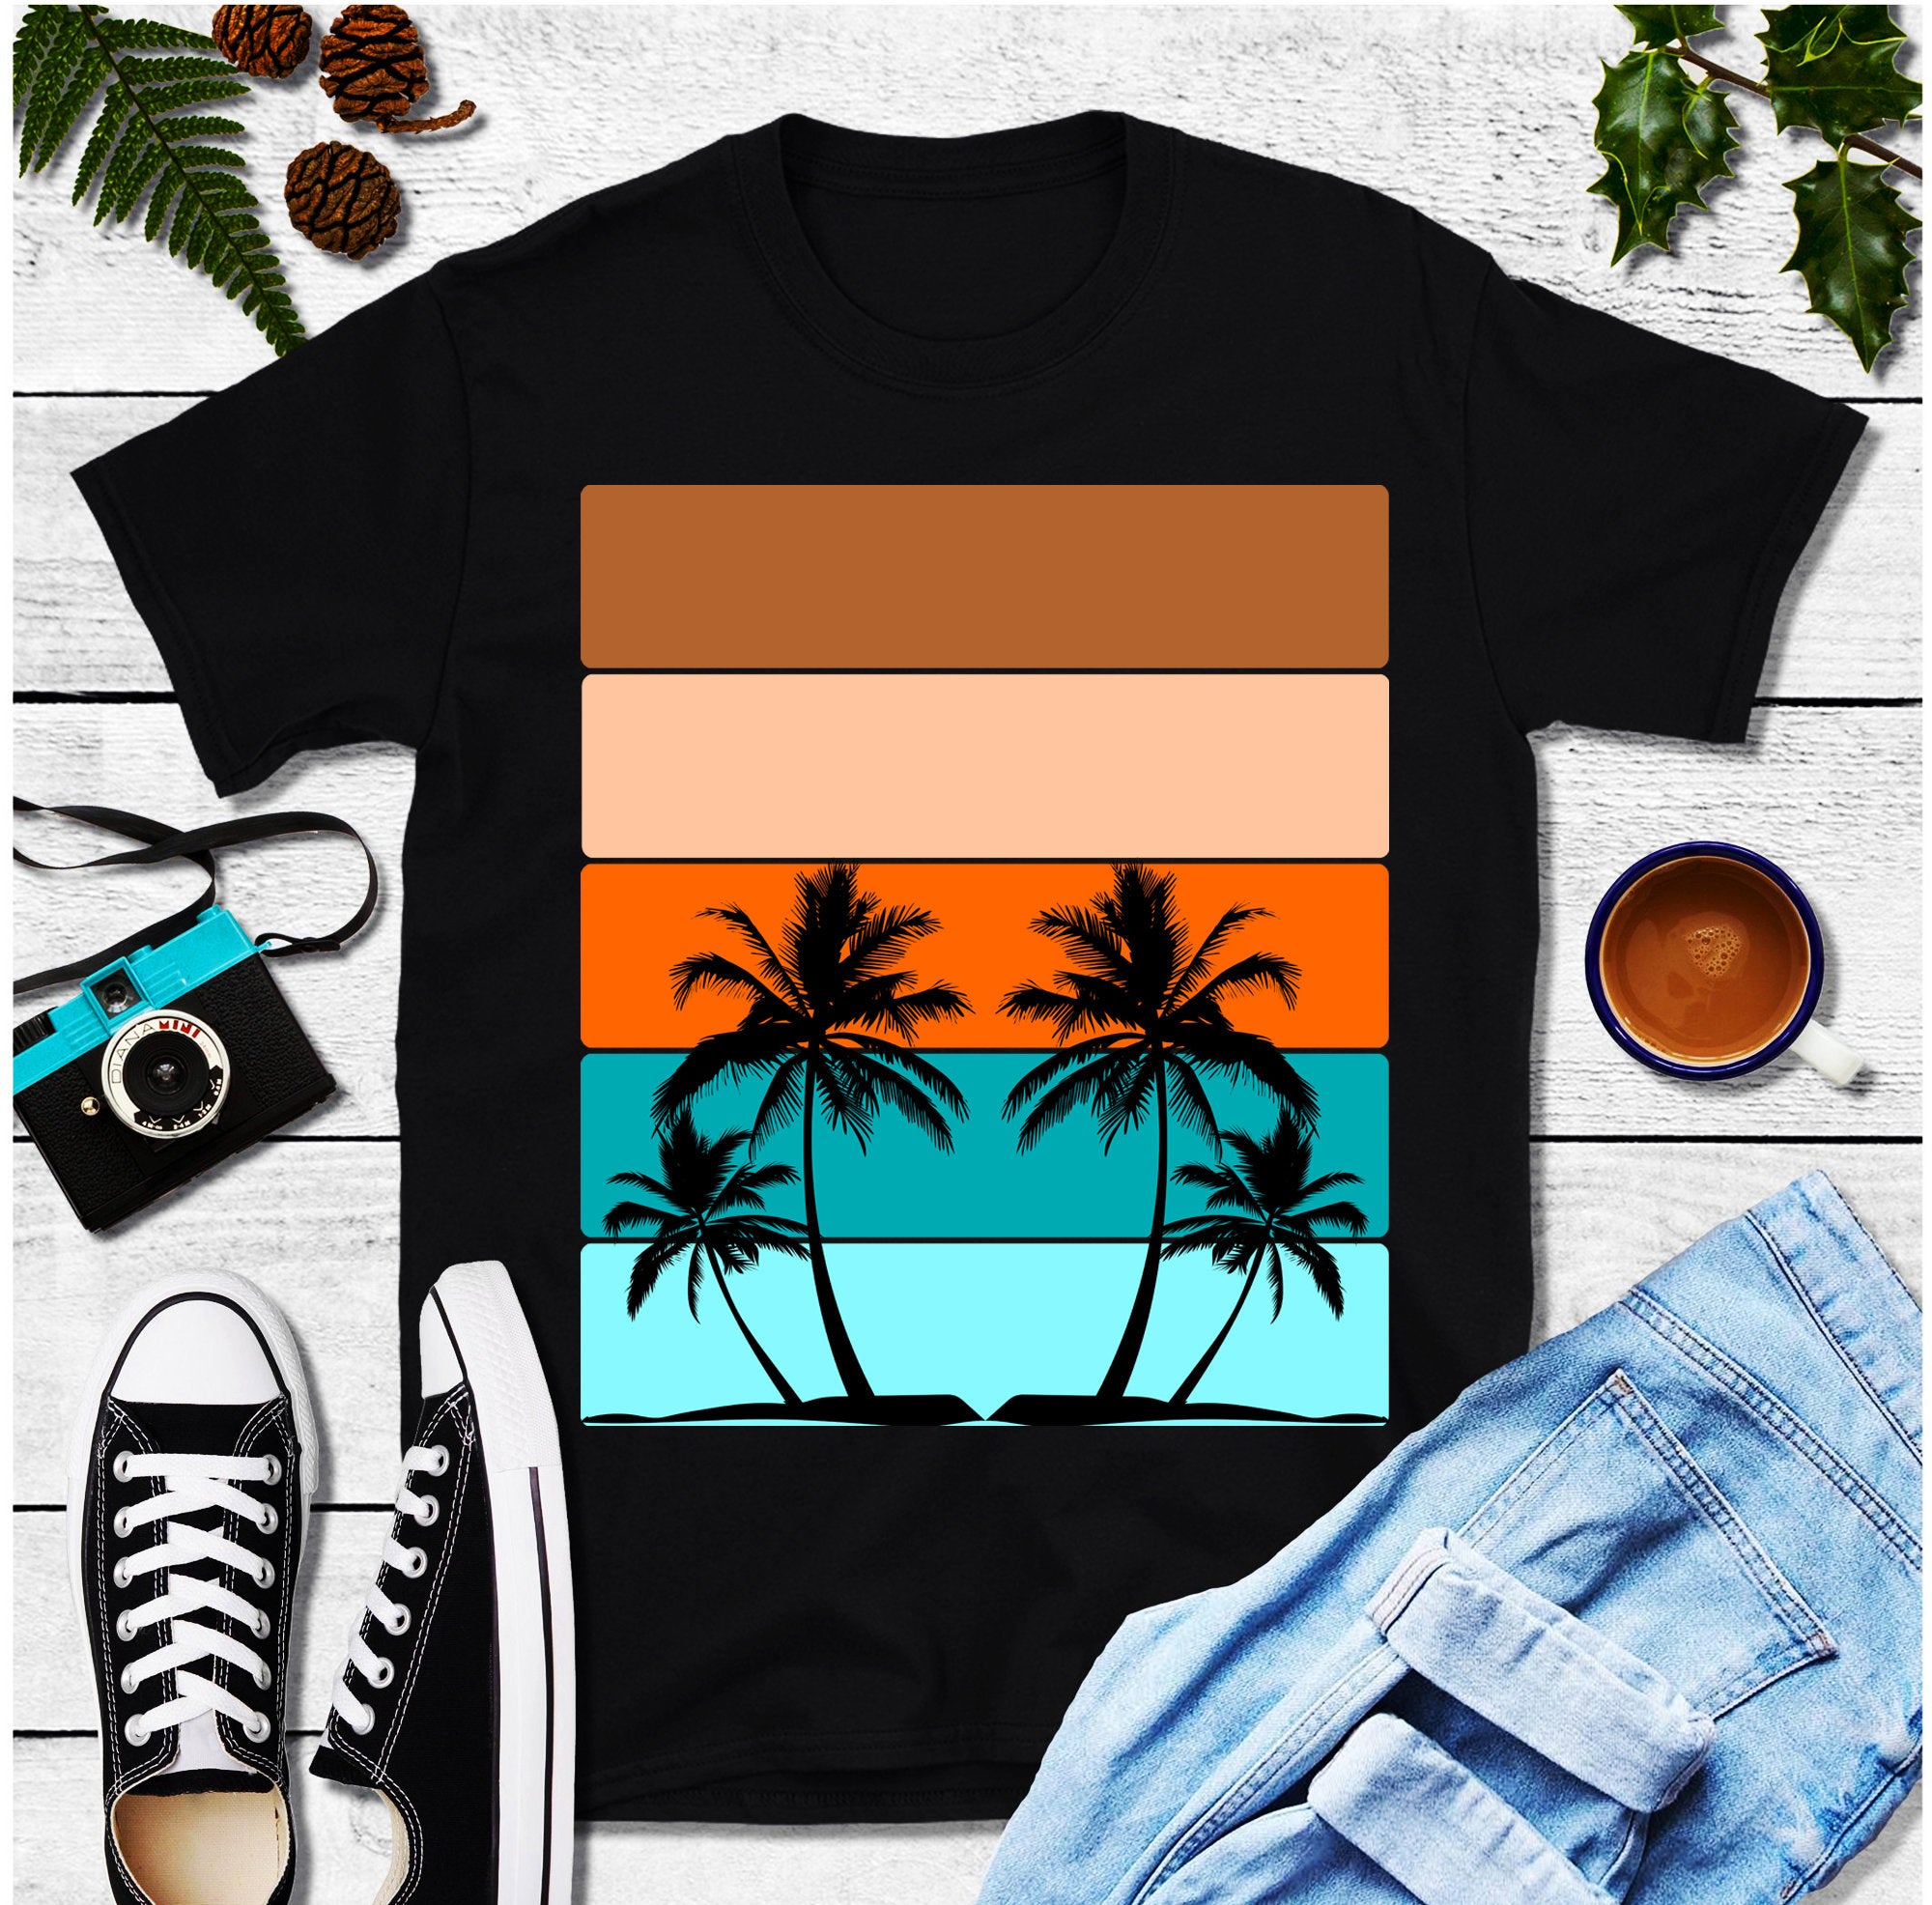 Palmy vodorovné pruhy | Retro trička Sunset - plusminusco.com